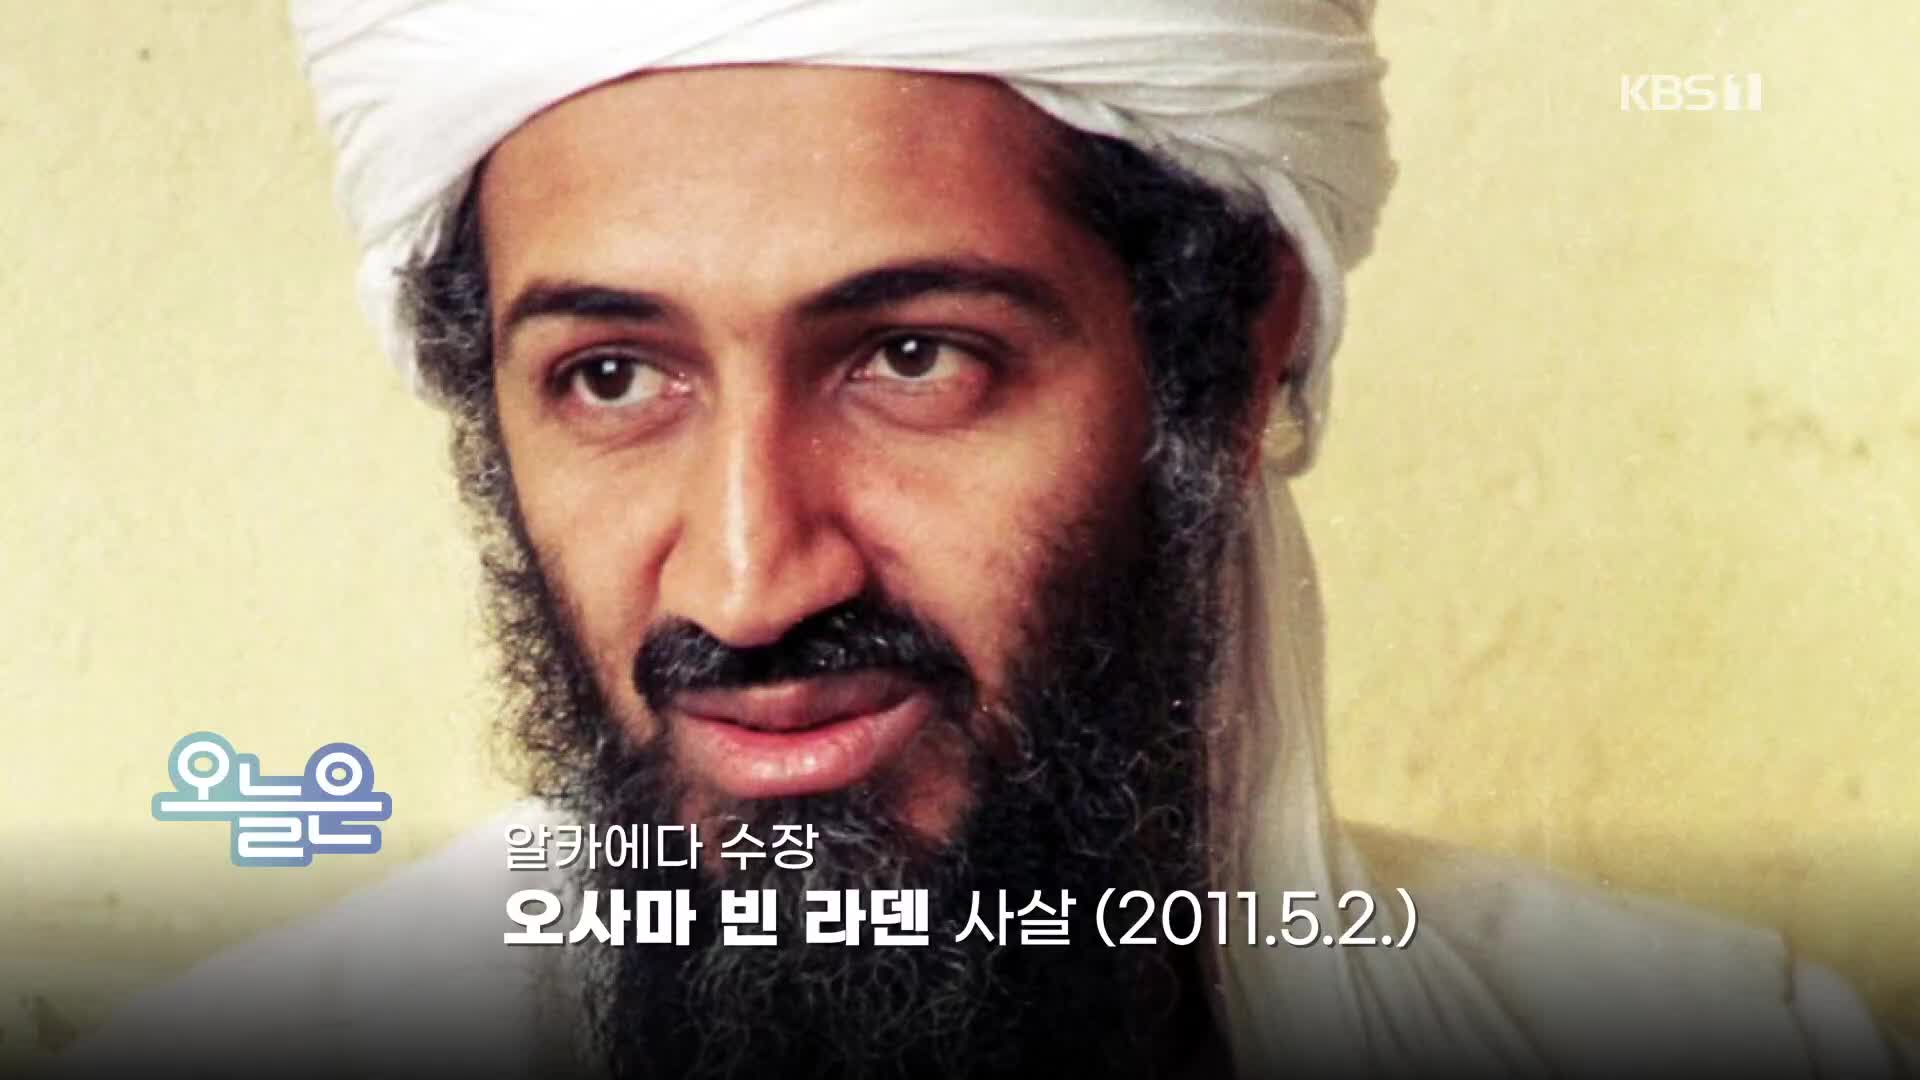 [오늘은] 알카에다 수장 오사마 빈 라덴 사살 (2011.5.2.)